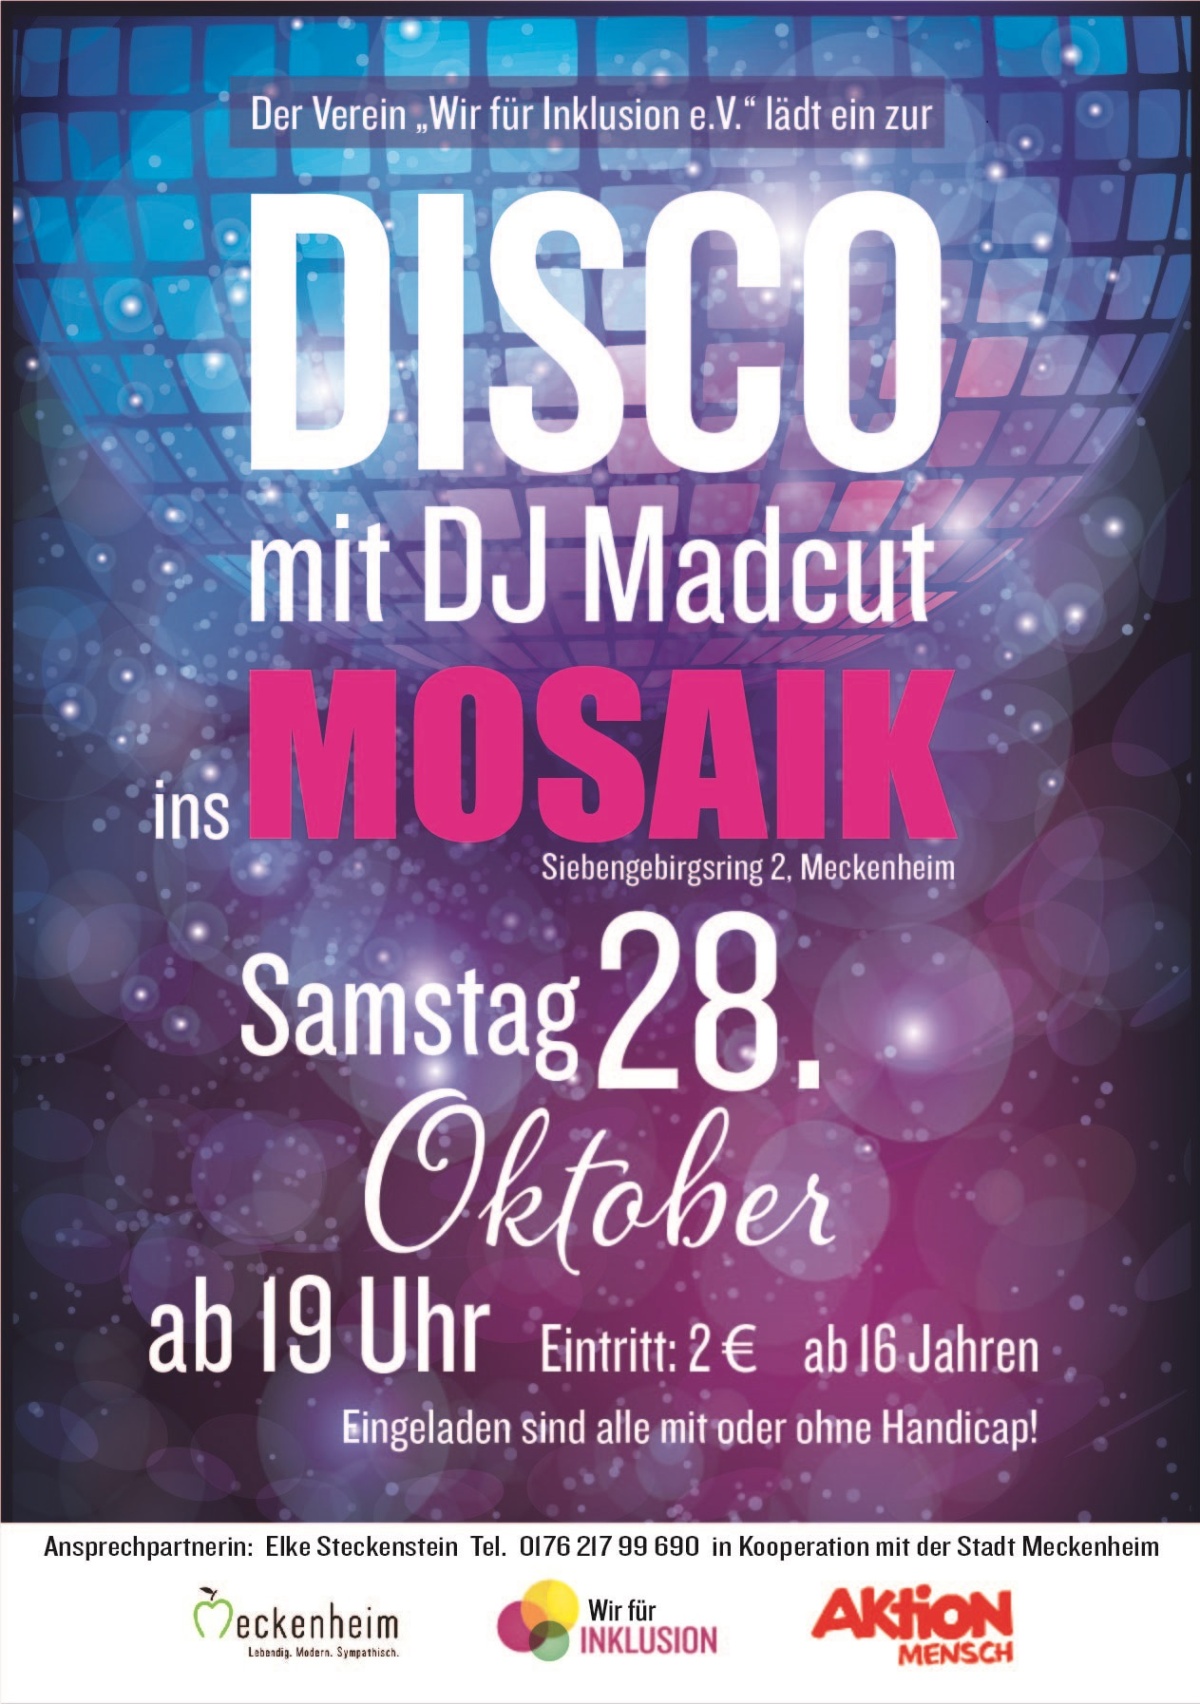 gestalteter Flyer zur Disco am 28.10.23 mit DJ Madcut im Mosaik. Der Einlass ist ab 19 Uhr und der Eintritt kostet 2€. Eingeladen sind alle menschen ab 16 Jahre.